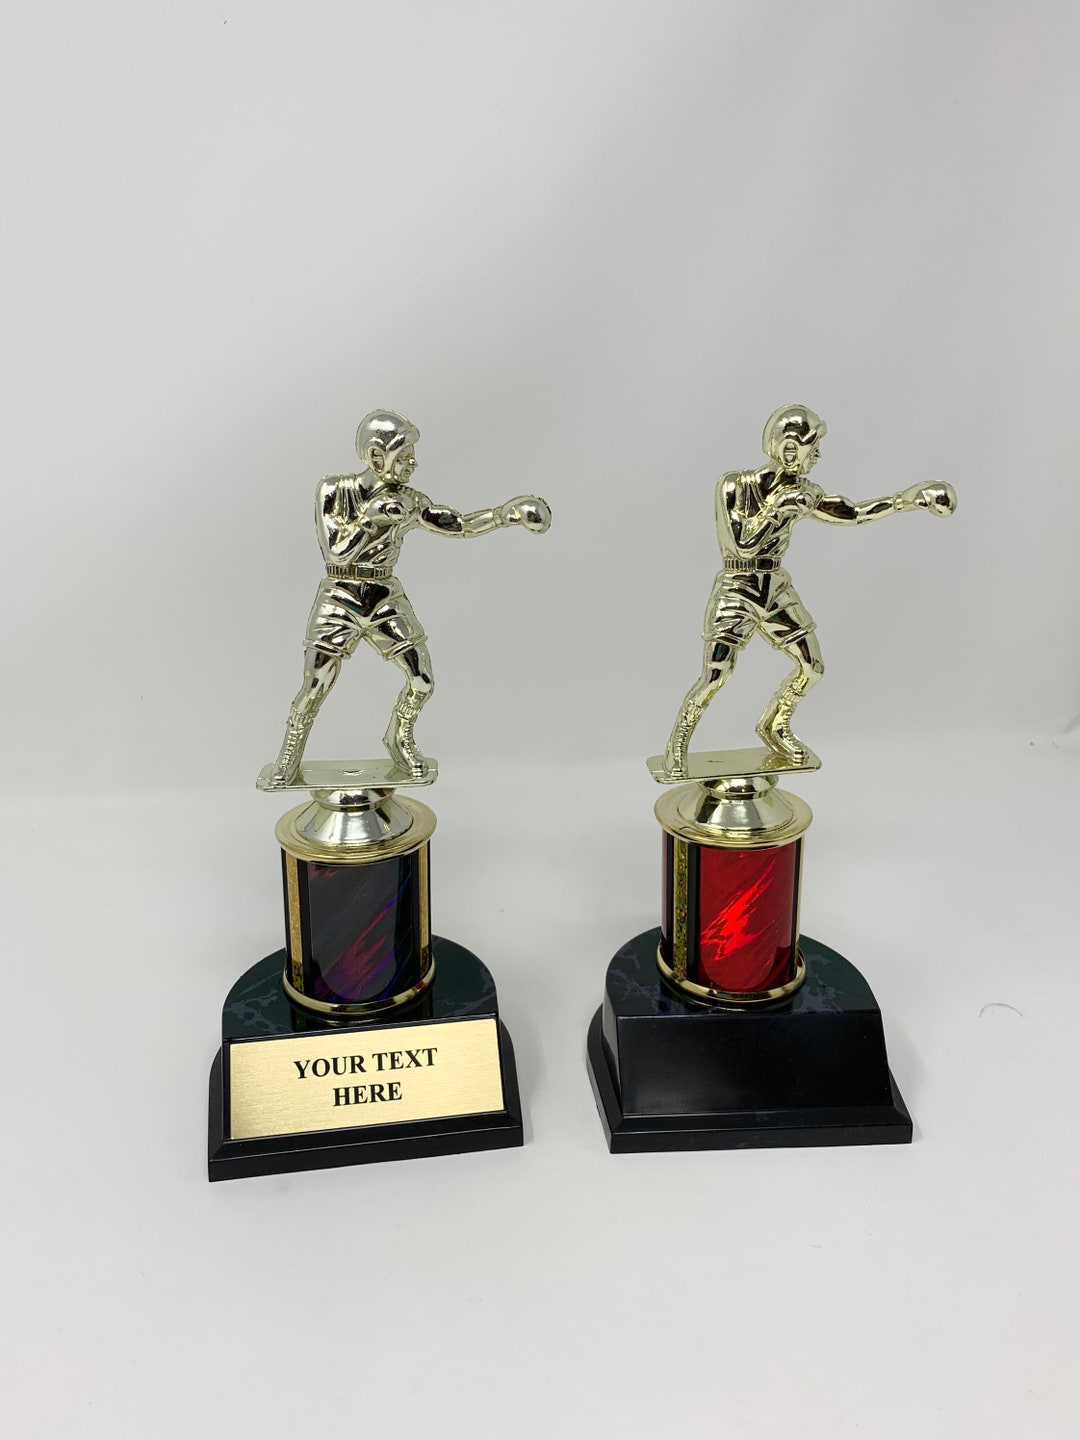 耐熱 二層 足あとぐらす (M) Boxing Trophy, 14"Silver Cup Boxing Award Trophies with  Free Personalization, 10枚組